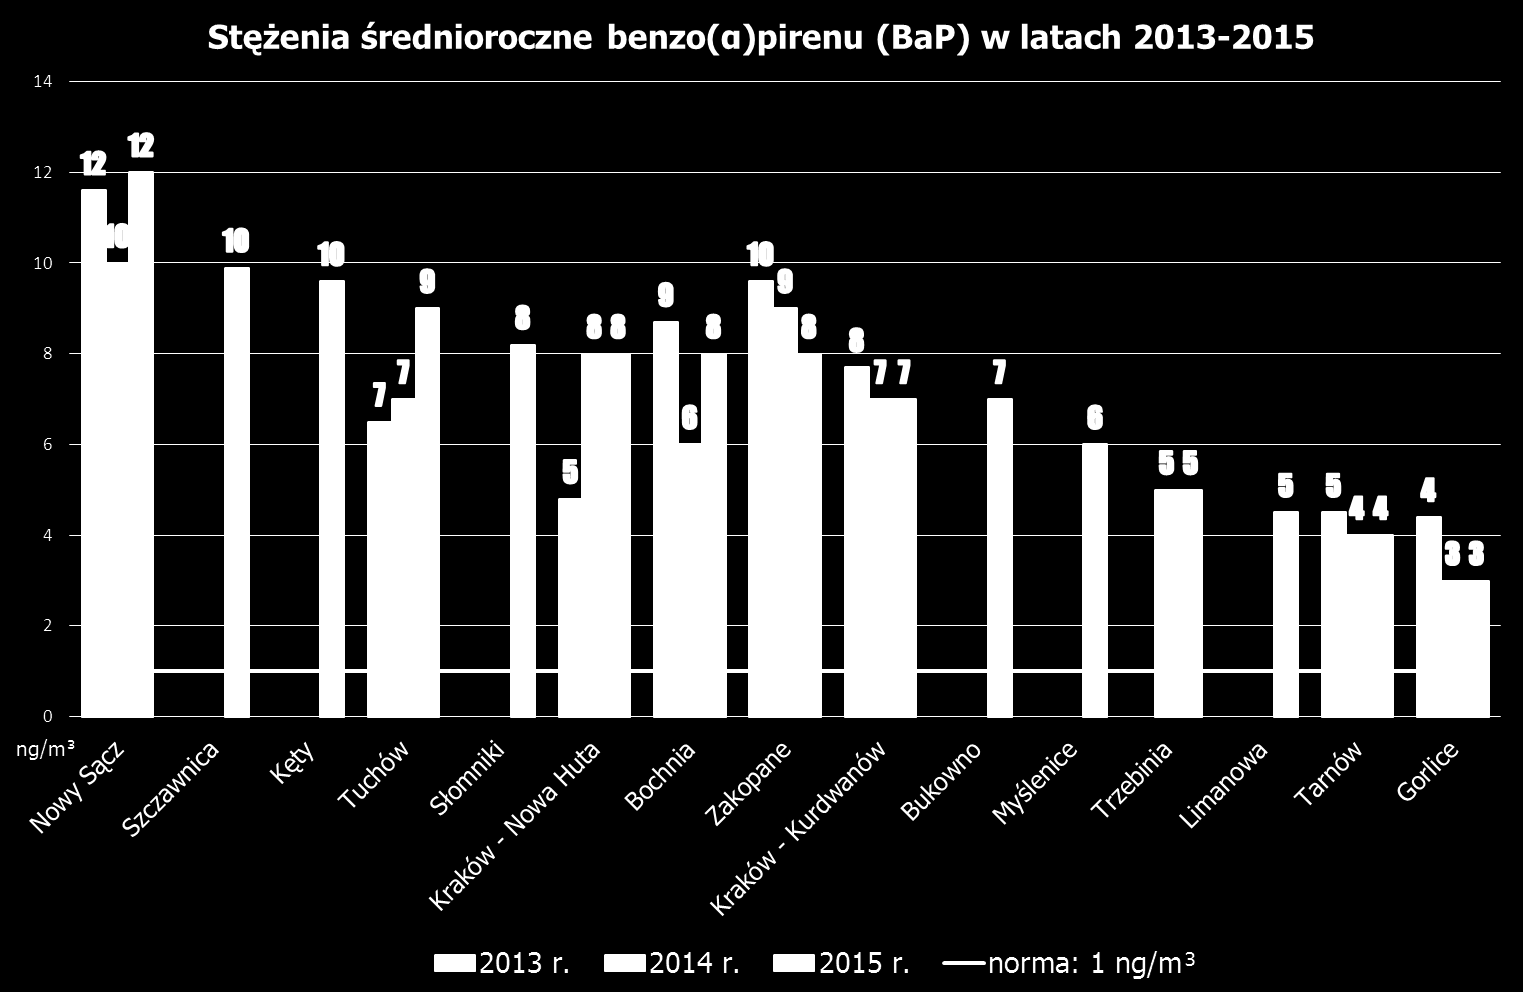 Stężenia średnioroczne benzo(a)pirenu w latach 2013-2015 mieściły się w granicach od 3 ng/m 3 do 12 ng/m 3.